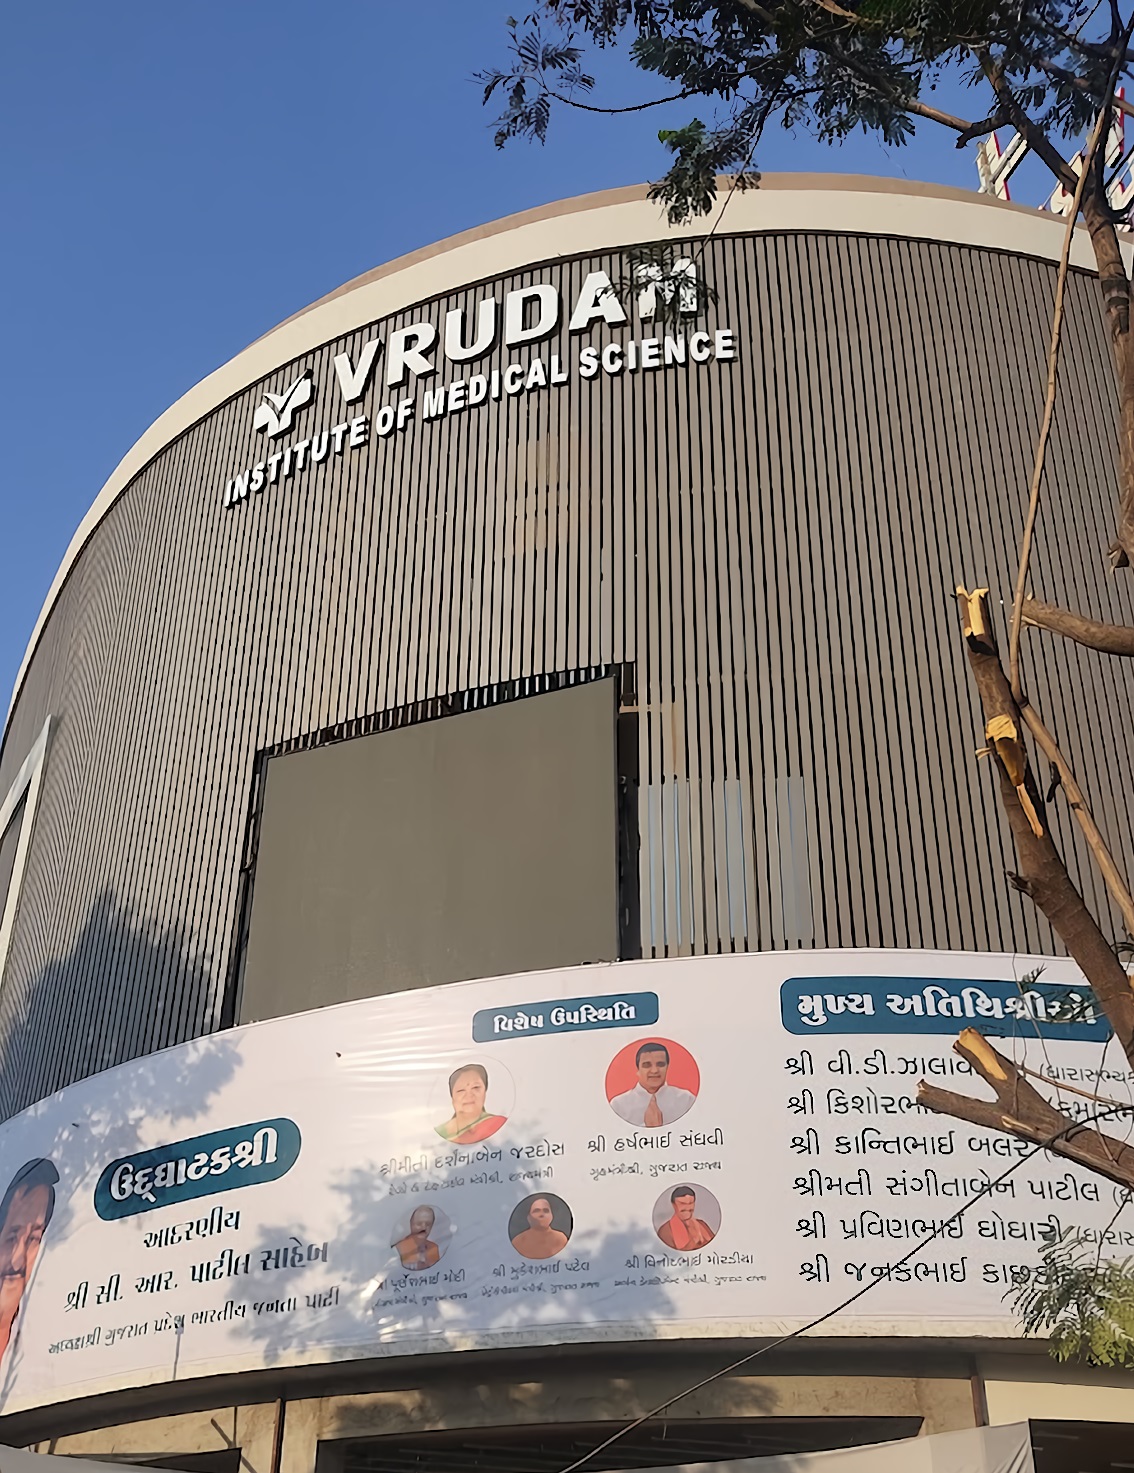 Vrudam Institute Of Medical Science